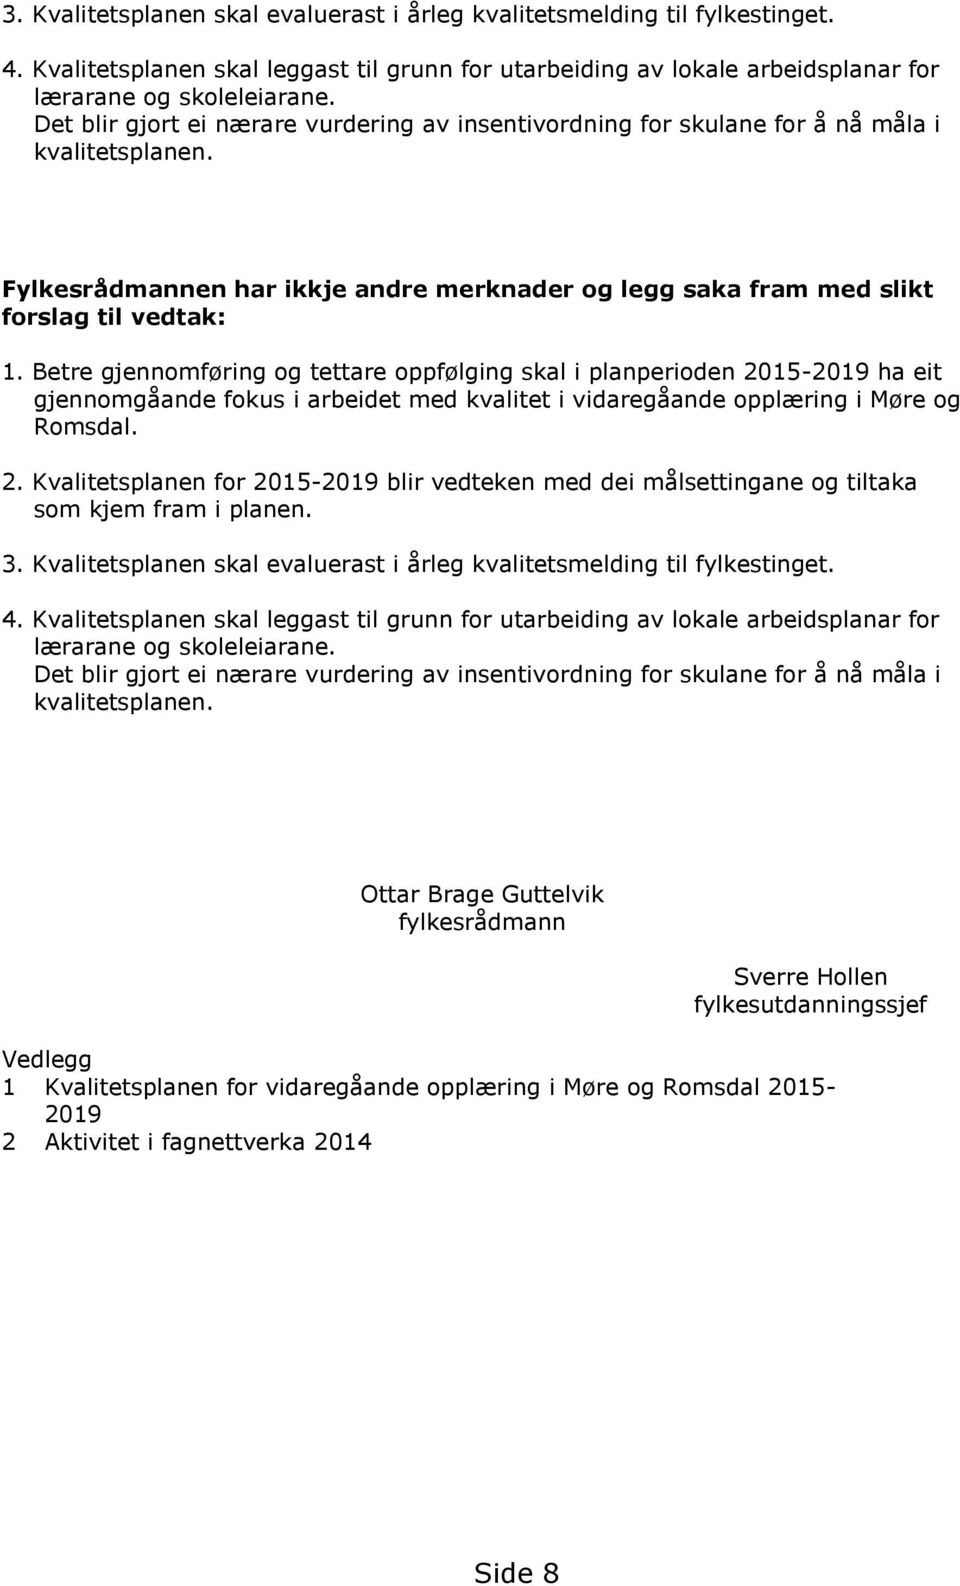 Betre gjennomføring og tettare oppfølging skal i planperioden 2015-2019 ha eit gjennomgåande fokus i arbeidet med kvalitet i vidaregåande opplæring i Møre og Romsdal. 2. Kvalitetsplanen for 2015-2019 blir vedteken med dei målsettingane og tiltaka som kjem fram i planen.